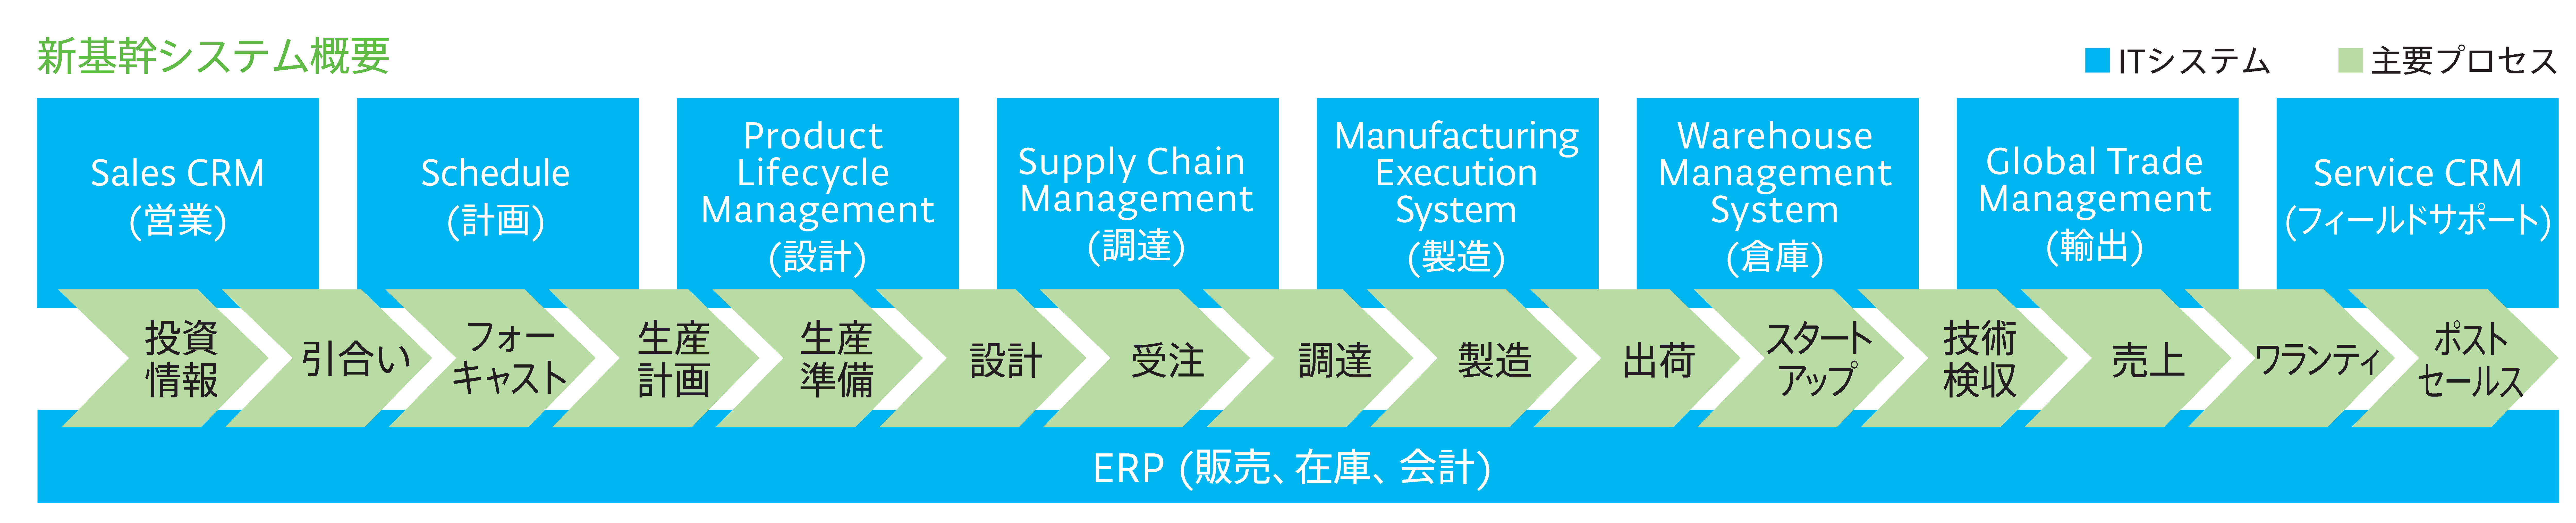 新基幹システム概要 Sales CRM(営業)、Schedule(計画)、Product Lifecycle Management(設計)、Supply Chain Management(調達)、Manufacturing Execution System(製造)、Warehouse Management System(倉庫)、Global Trade Management(輸出)、Service CRM(フィールドサポート)のITシステム 投資情報、引き合い、フォーキャスト、生産計画、生産準備、設計、受注、調達、製造、出荷、スタートアップ、技術検収、売上、ワランティ、ポストセールスの主要プロセスで構成されたERP(販売、在庫、会計)